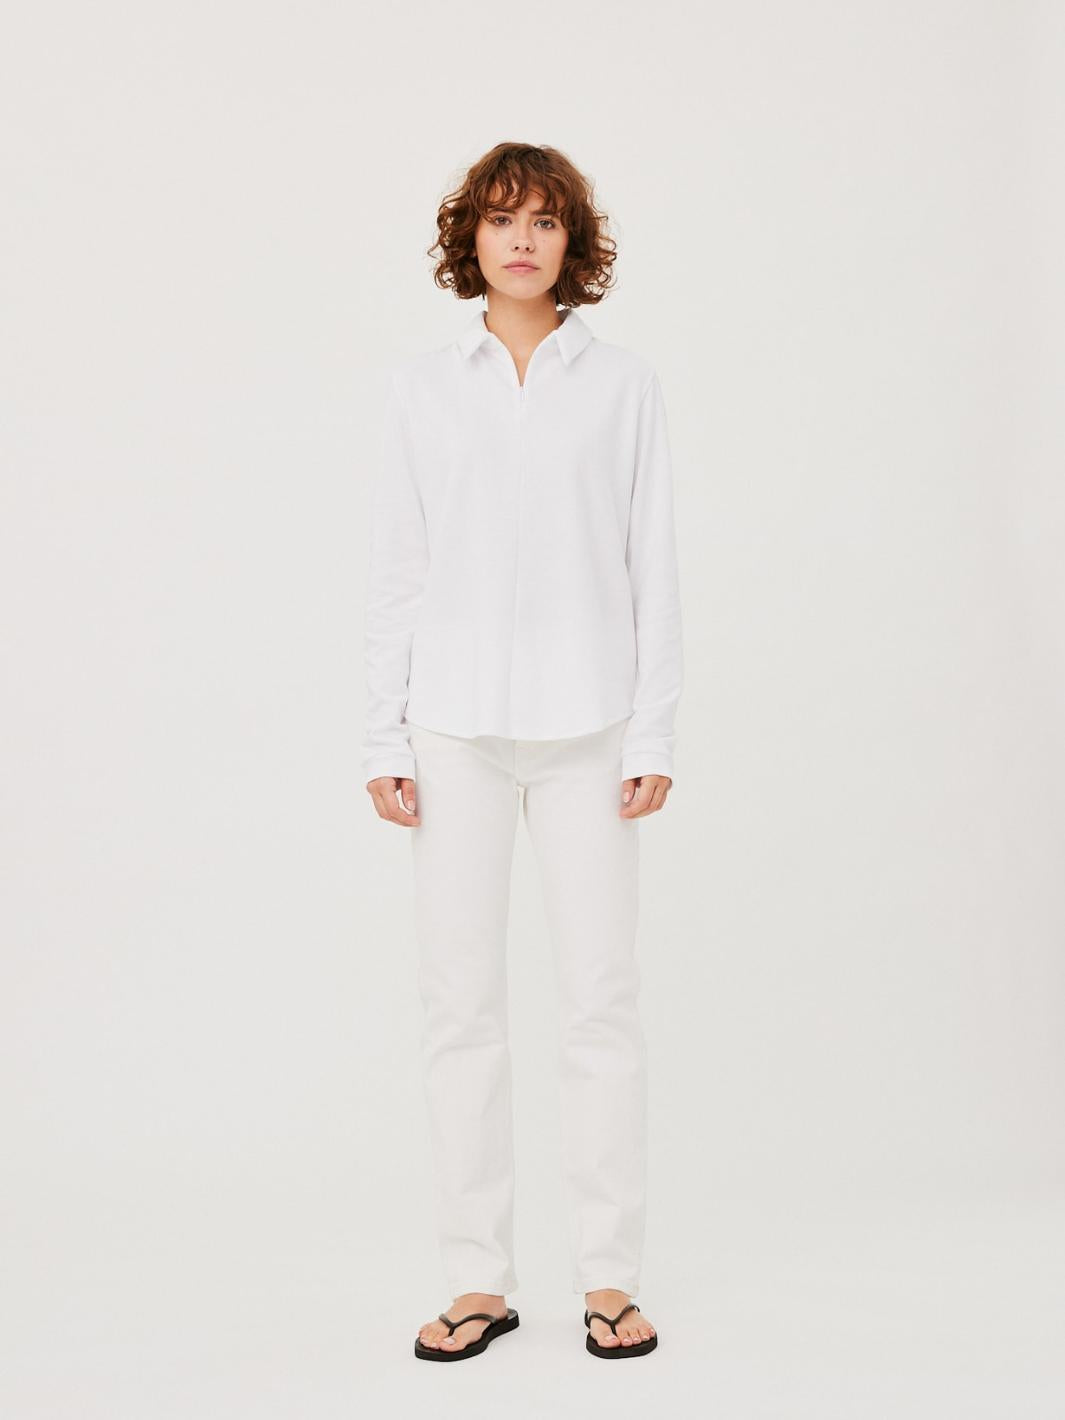 Julie Josephine Shirts Genser | Fannie Half-Zip Shirt White